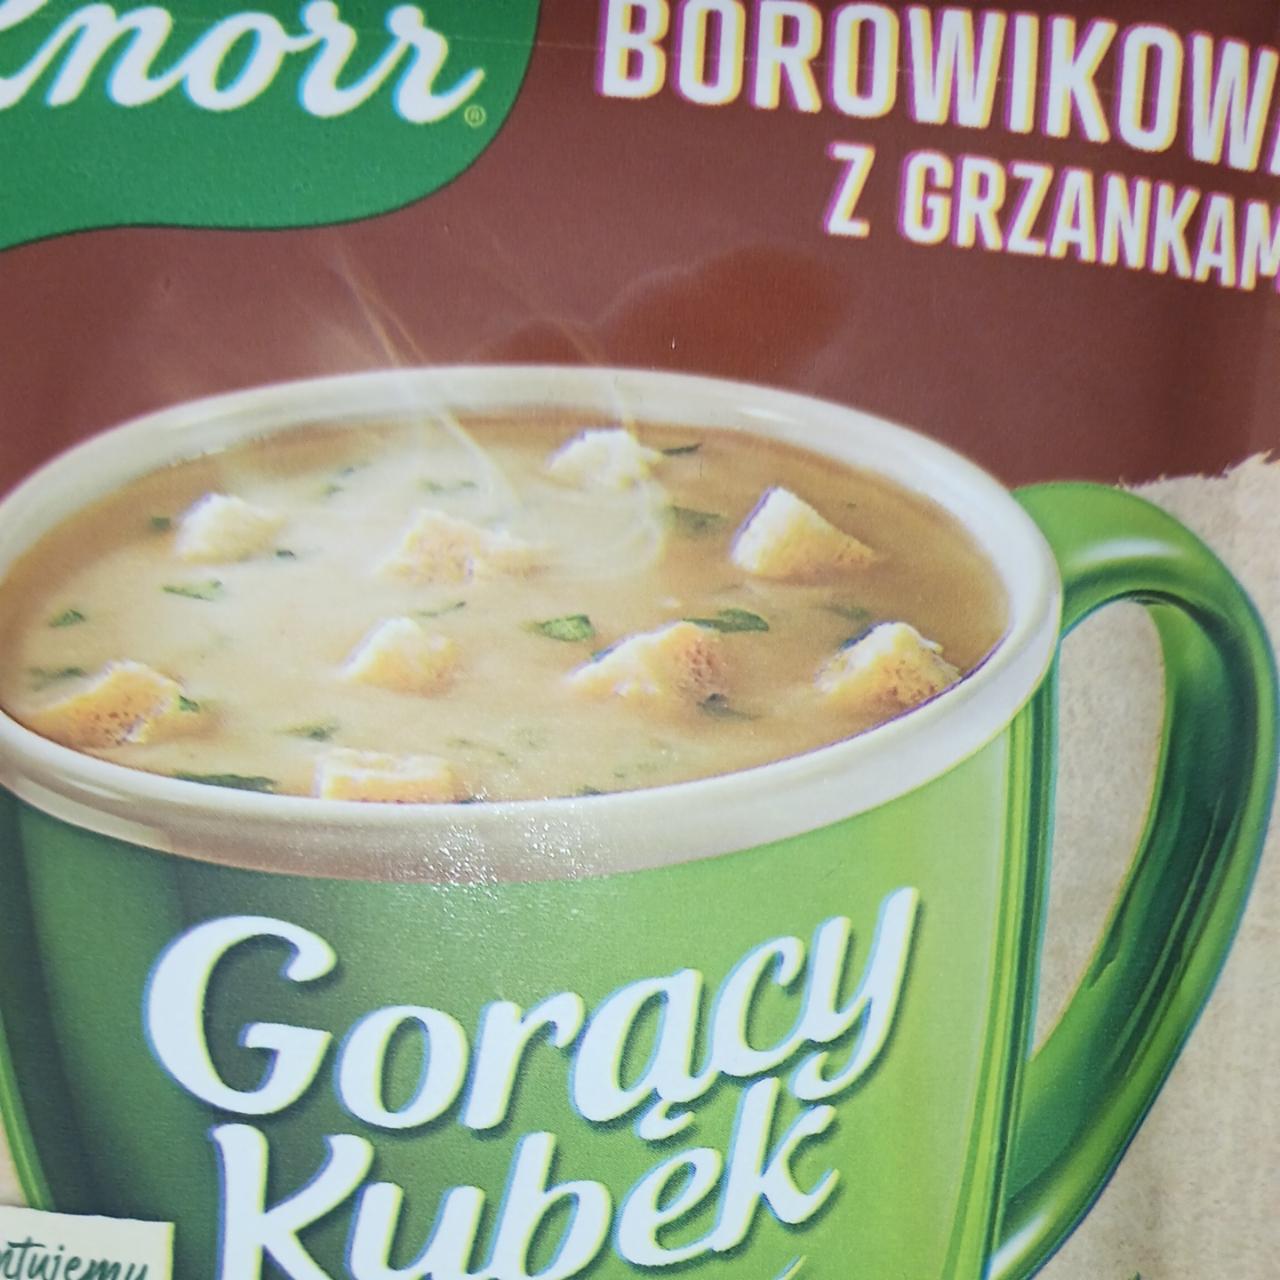 Zdjęcia - Knorr Gorący Kubek Borowikowa z grzankami 15 g